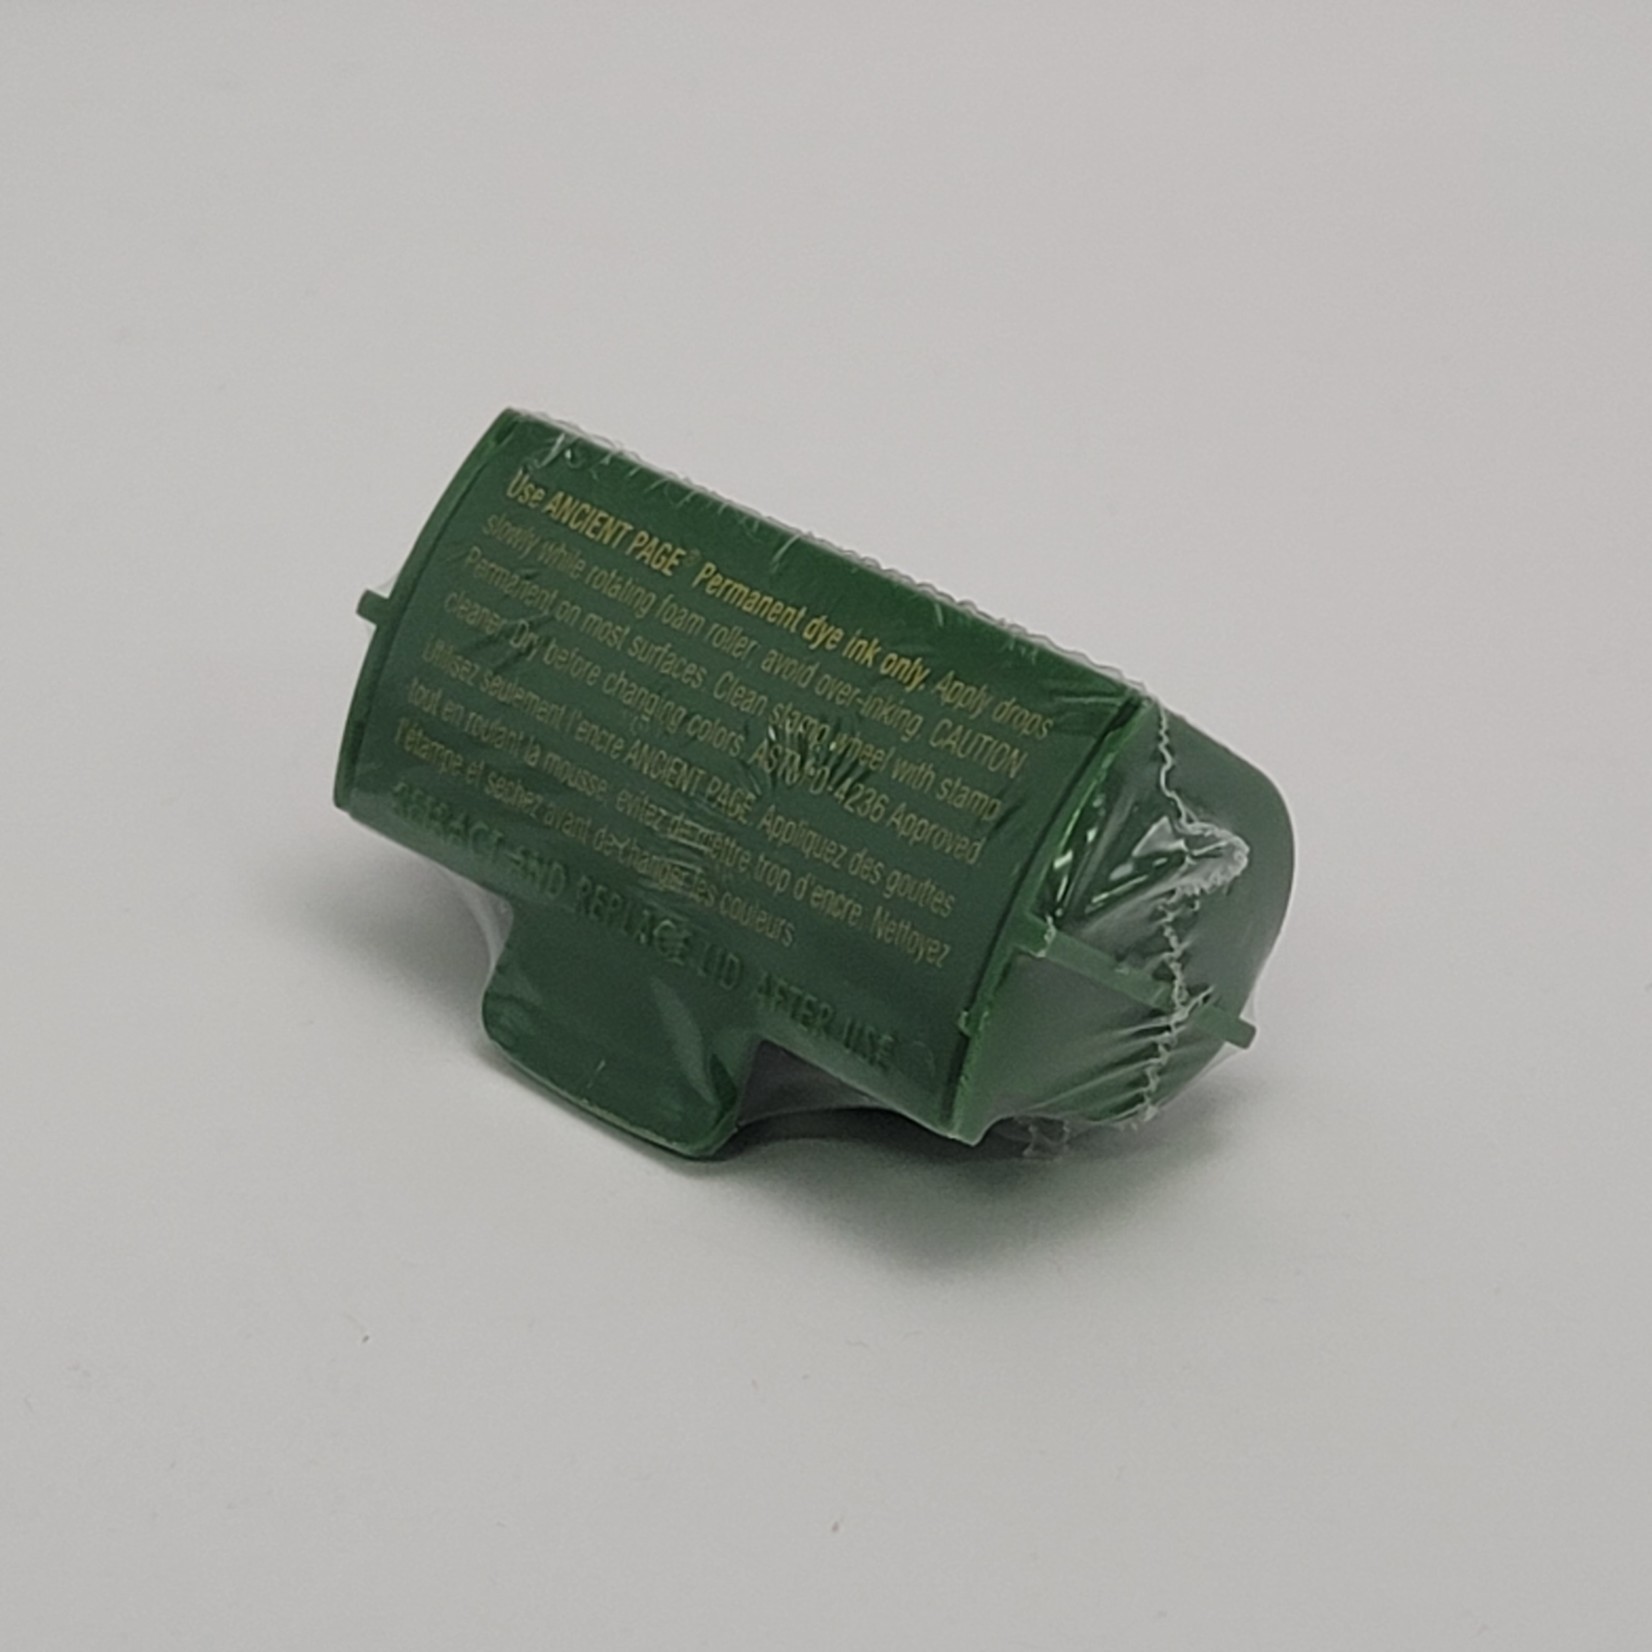 Stampin' Up Stampin' Around - cartridge for large wheel - Emerald